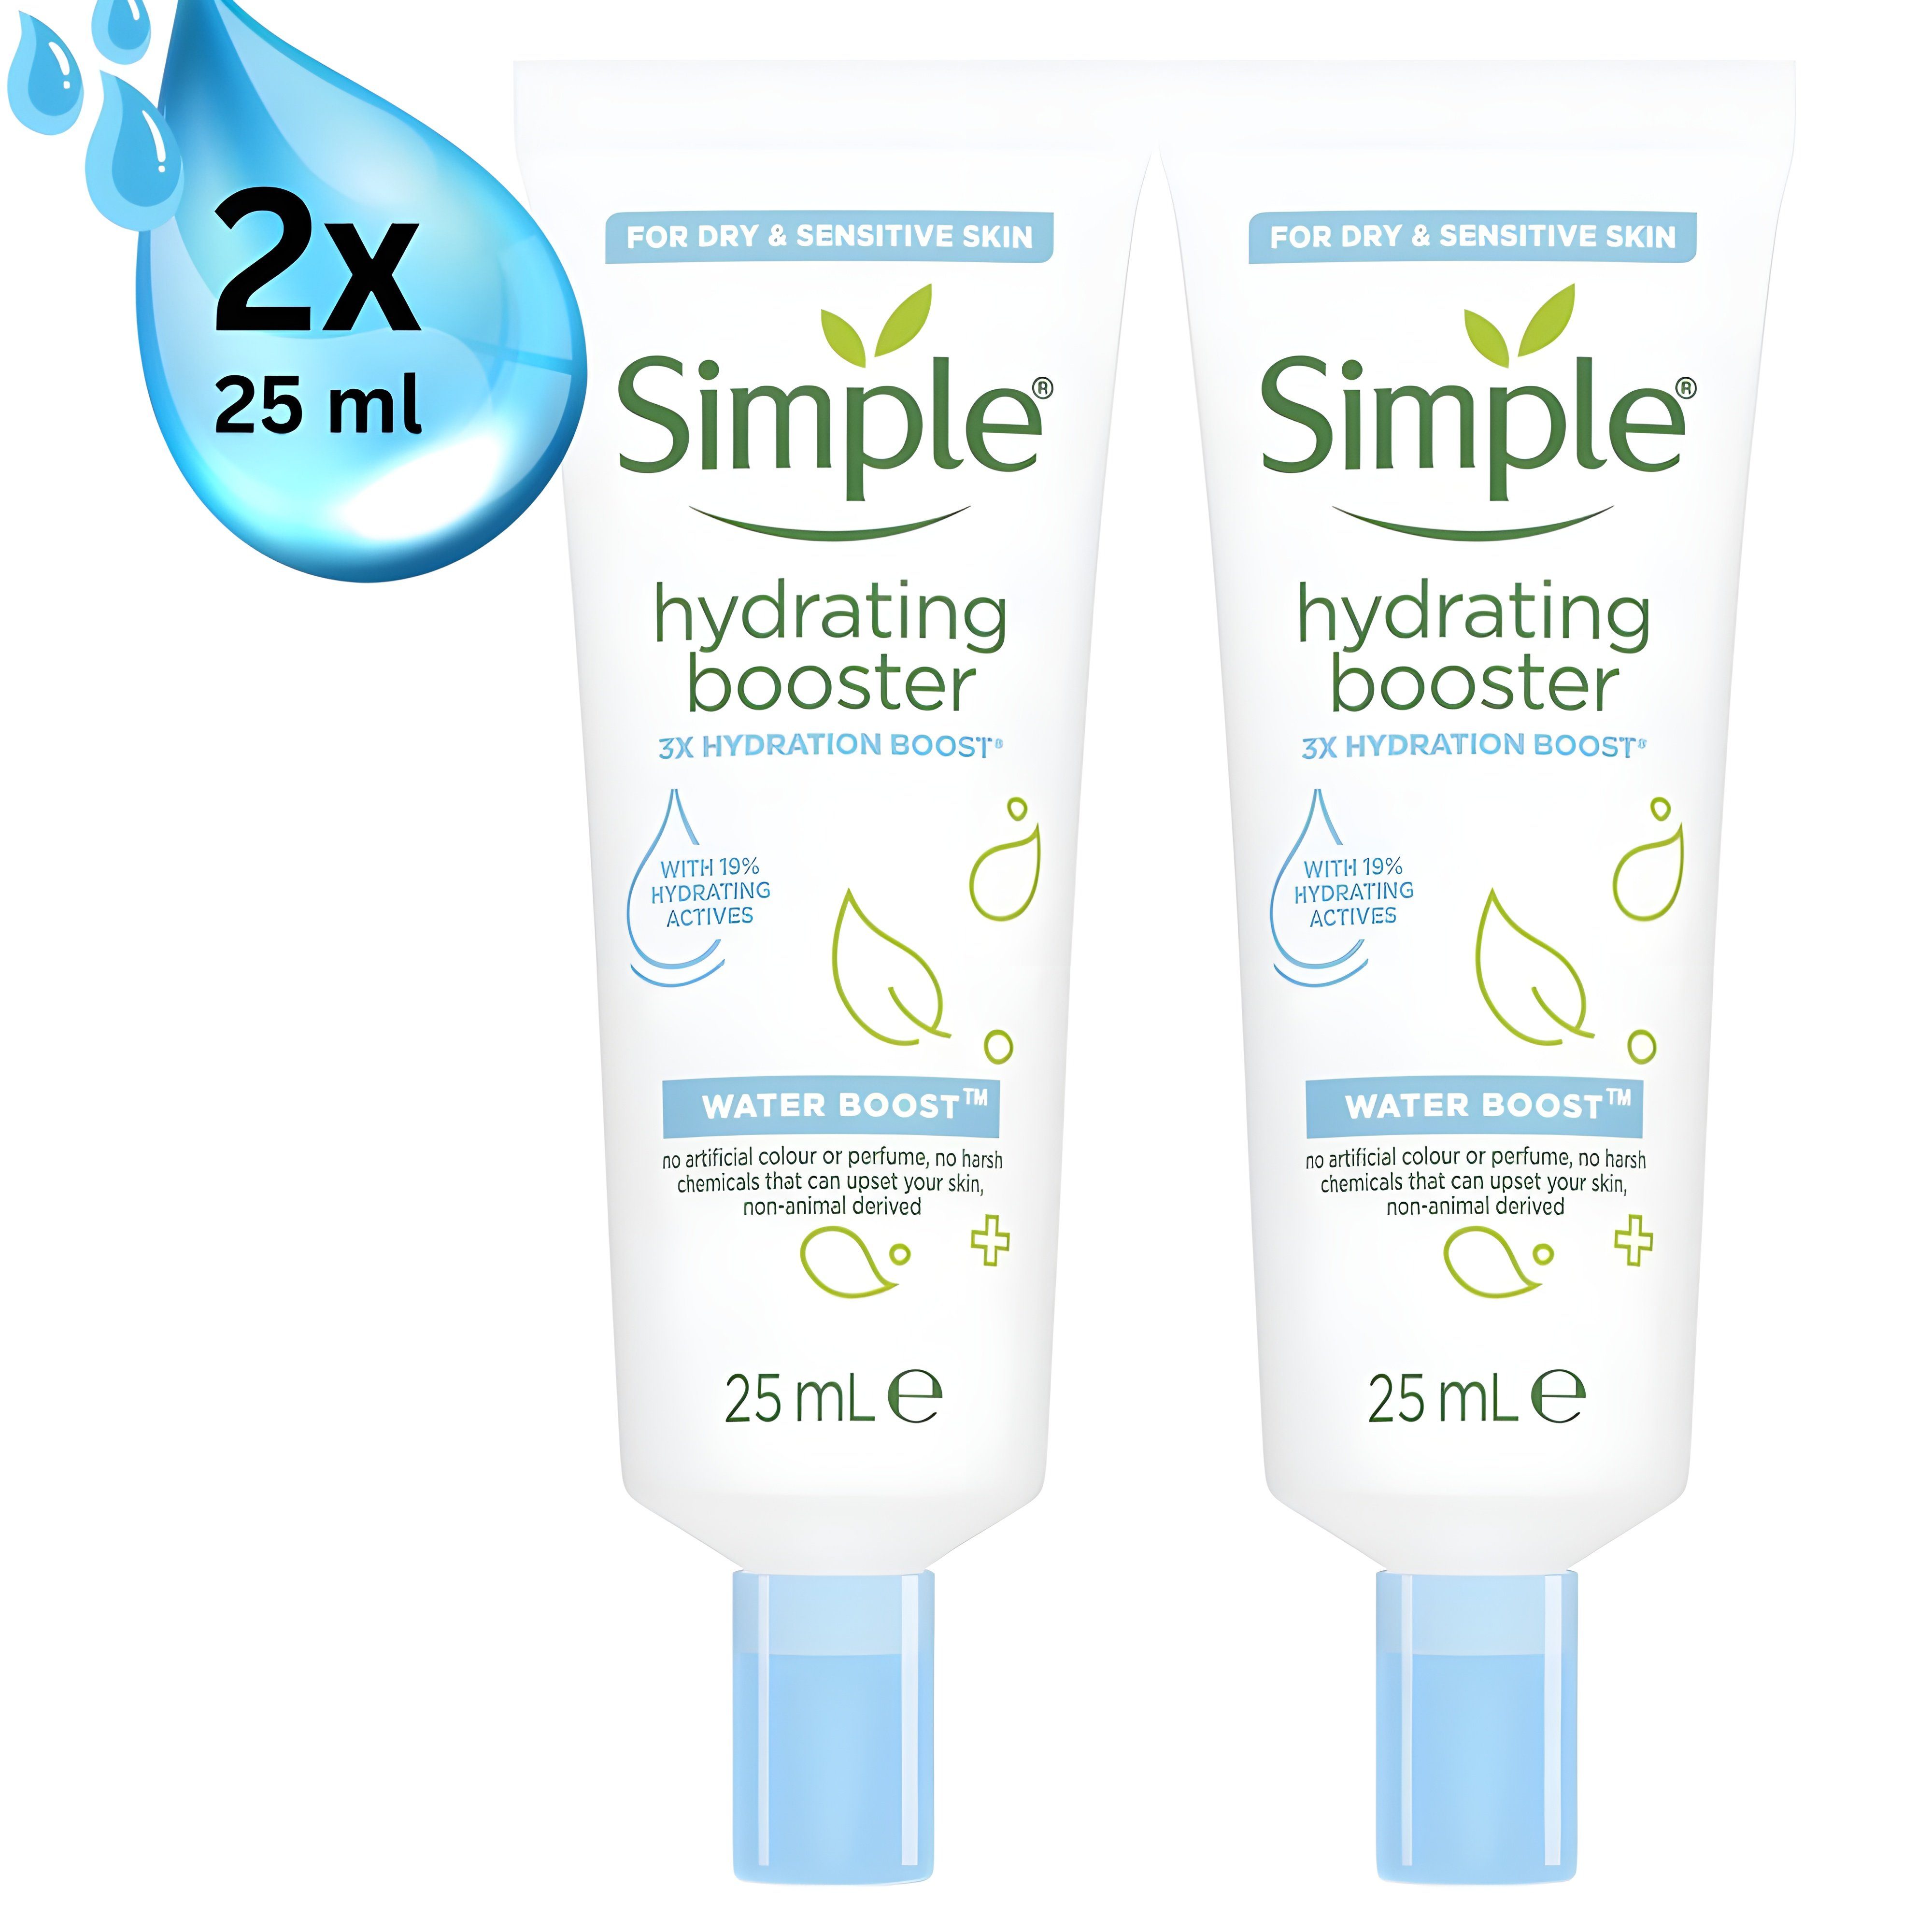 Simple Feuchtigkeitsgel Hydration Booster 2 x 25 ml, für dehydrierte und trockene Haut - keine aggressive Chemikalien